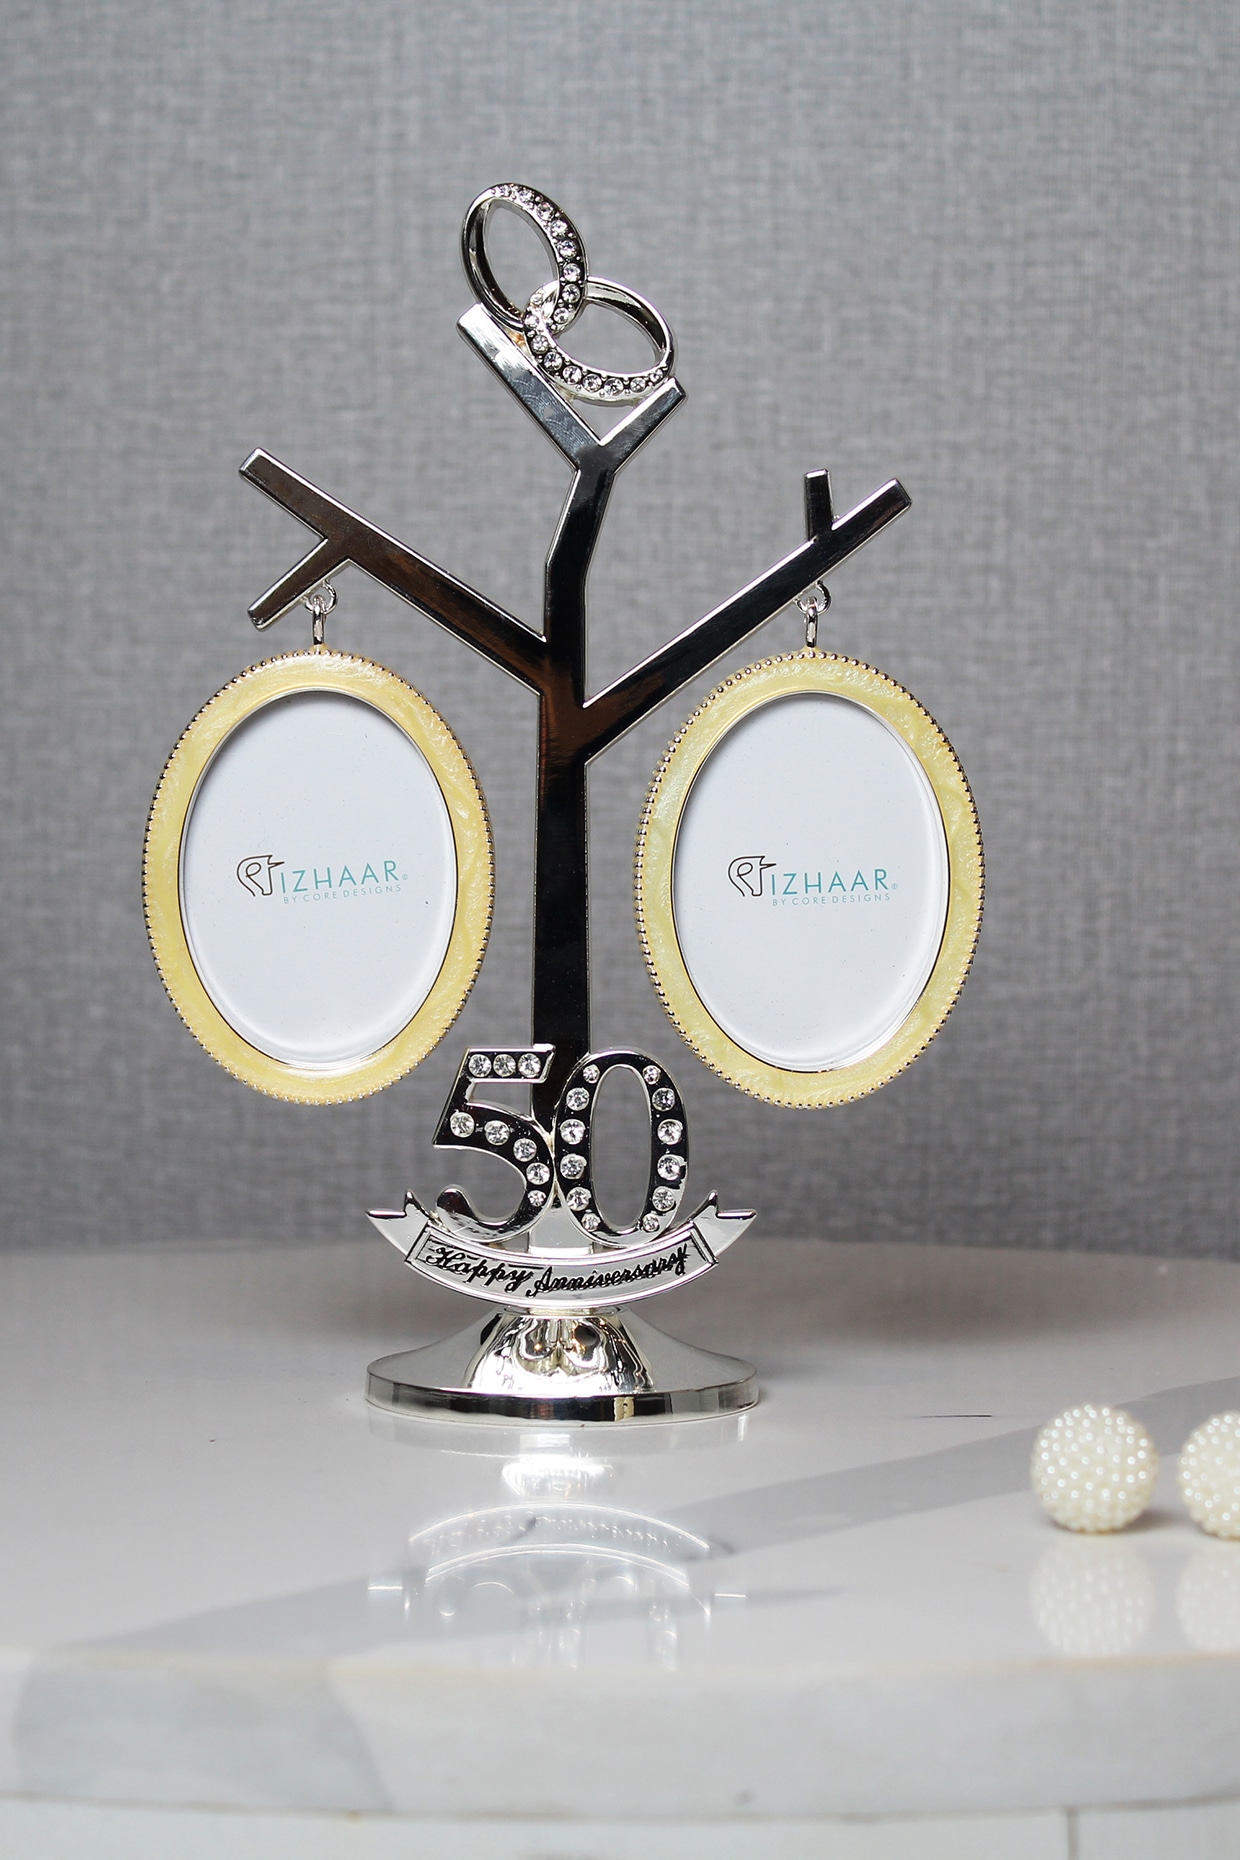 Personalised Anniversary gift/keepsake - perfect 1 year engagement/ anniversary | eBay